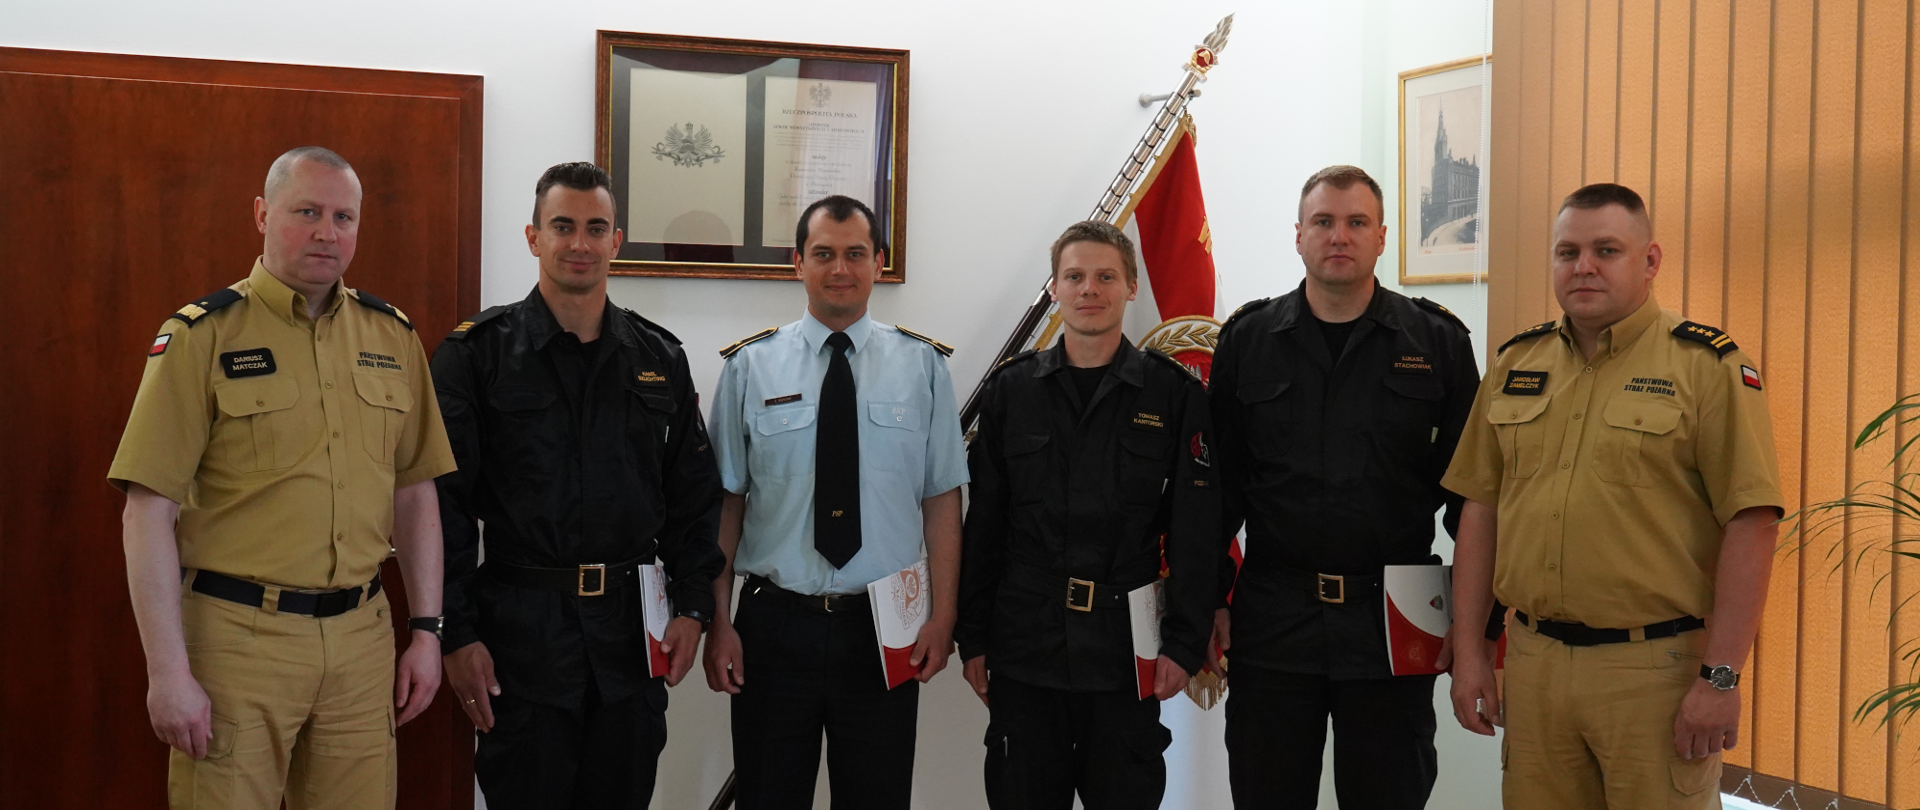 strażacy stoją obok siebie, dwóch z nich na bokach stoi w jasnych mundutrach , jeden w środku stoi w niebieskiej koszulii z krawatem, pozostałych trzech w czranych mundurach , w tle sztandar